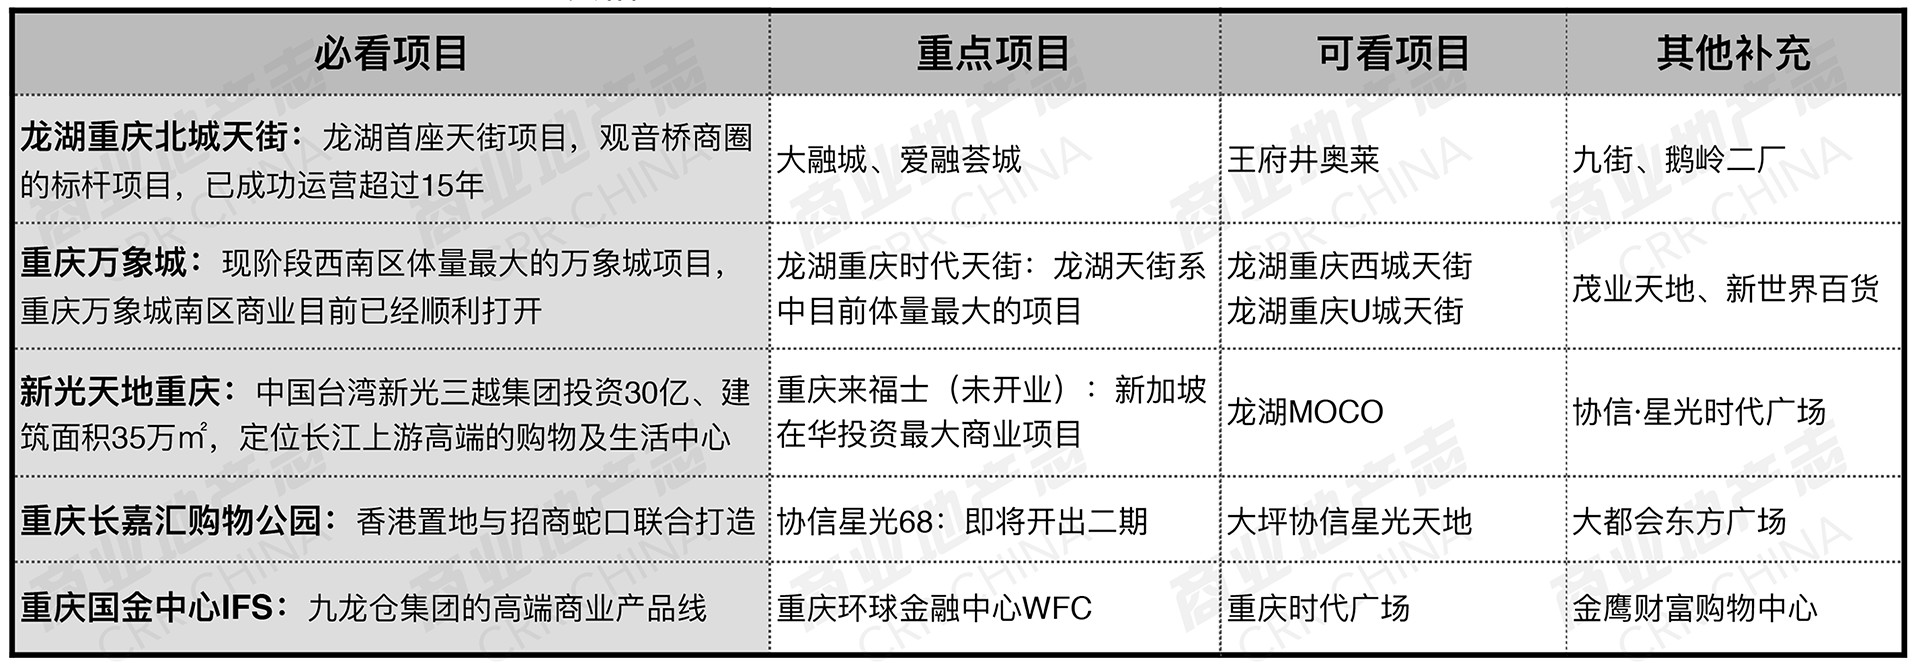 重庆商业项目市调行程建议